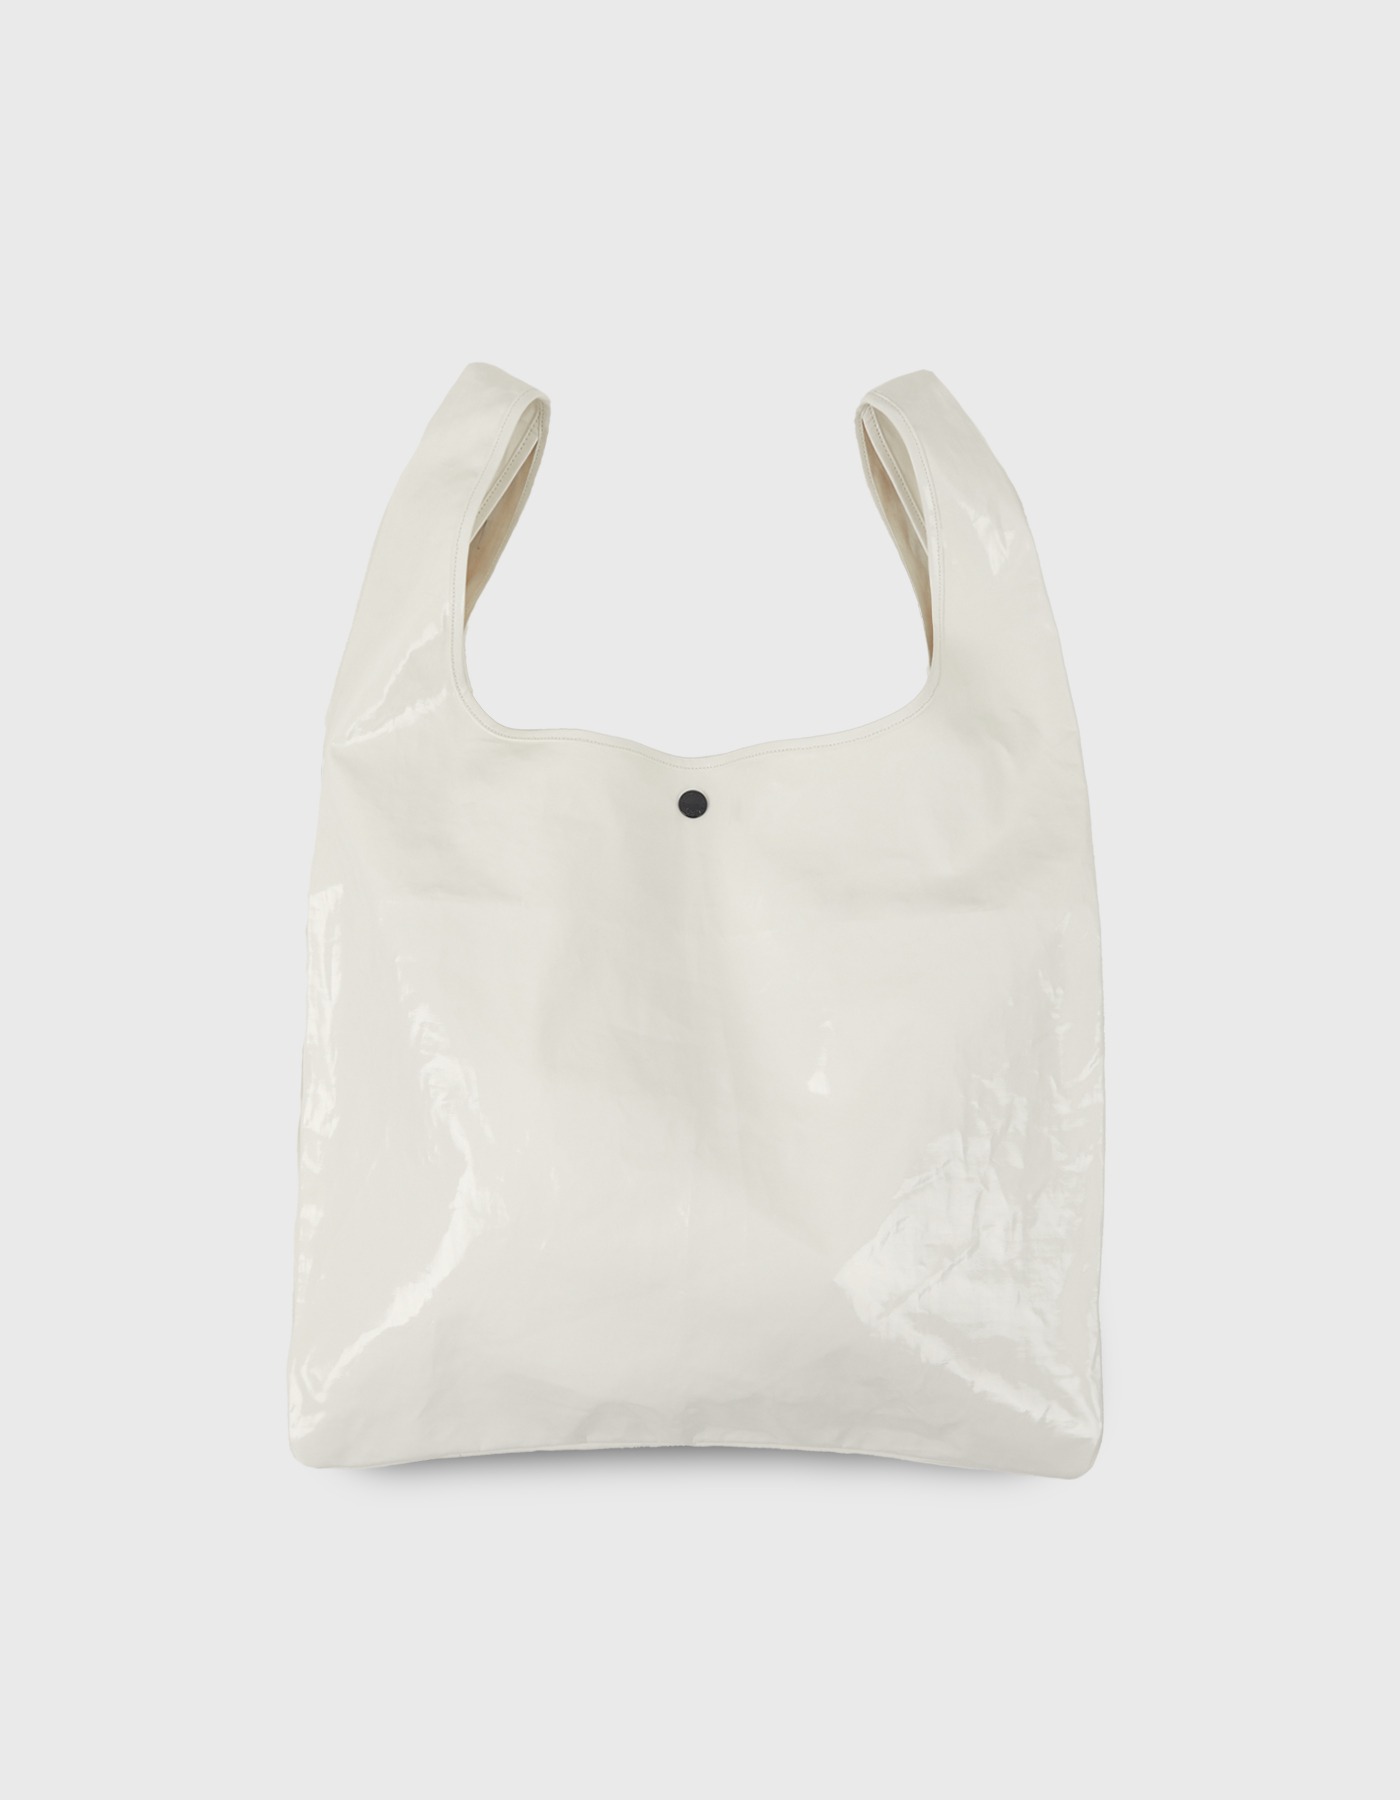 PATENT PLASTIC BAG / Cream